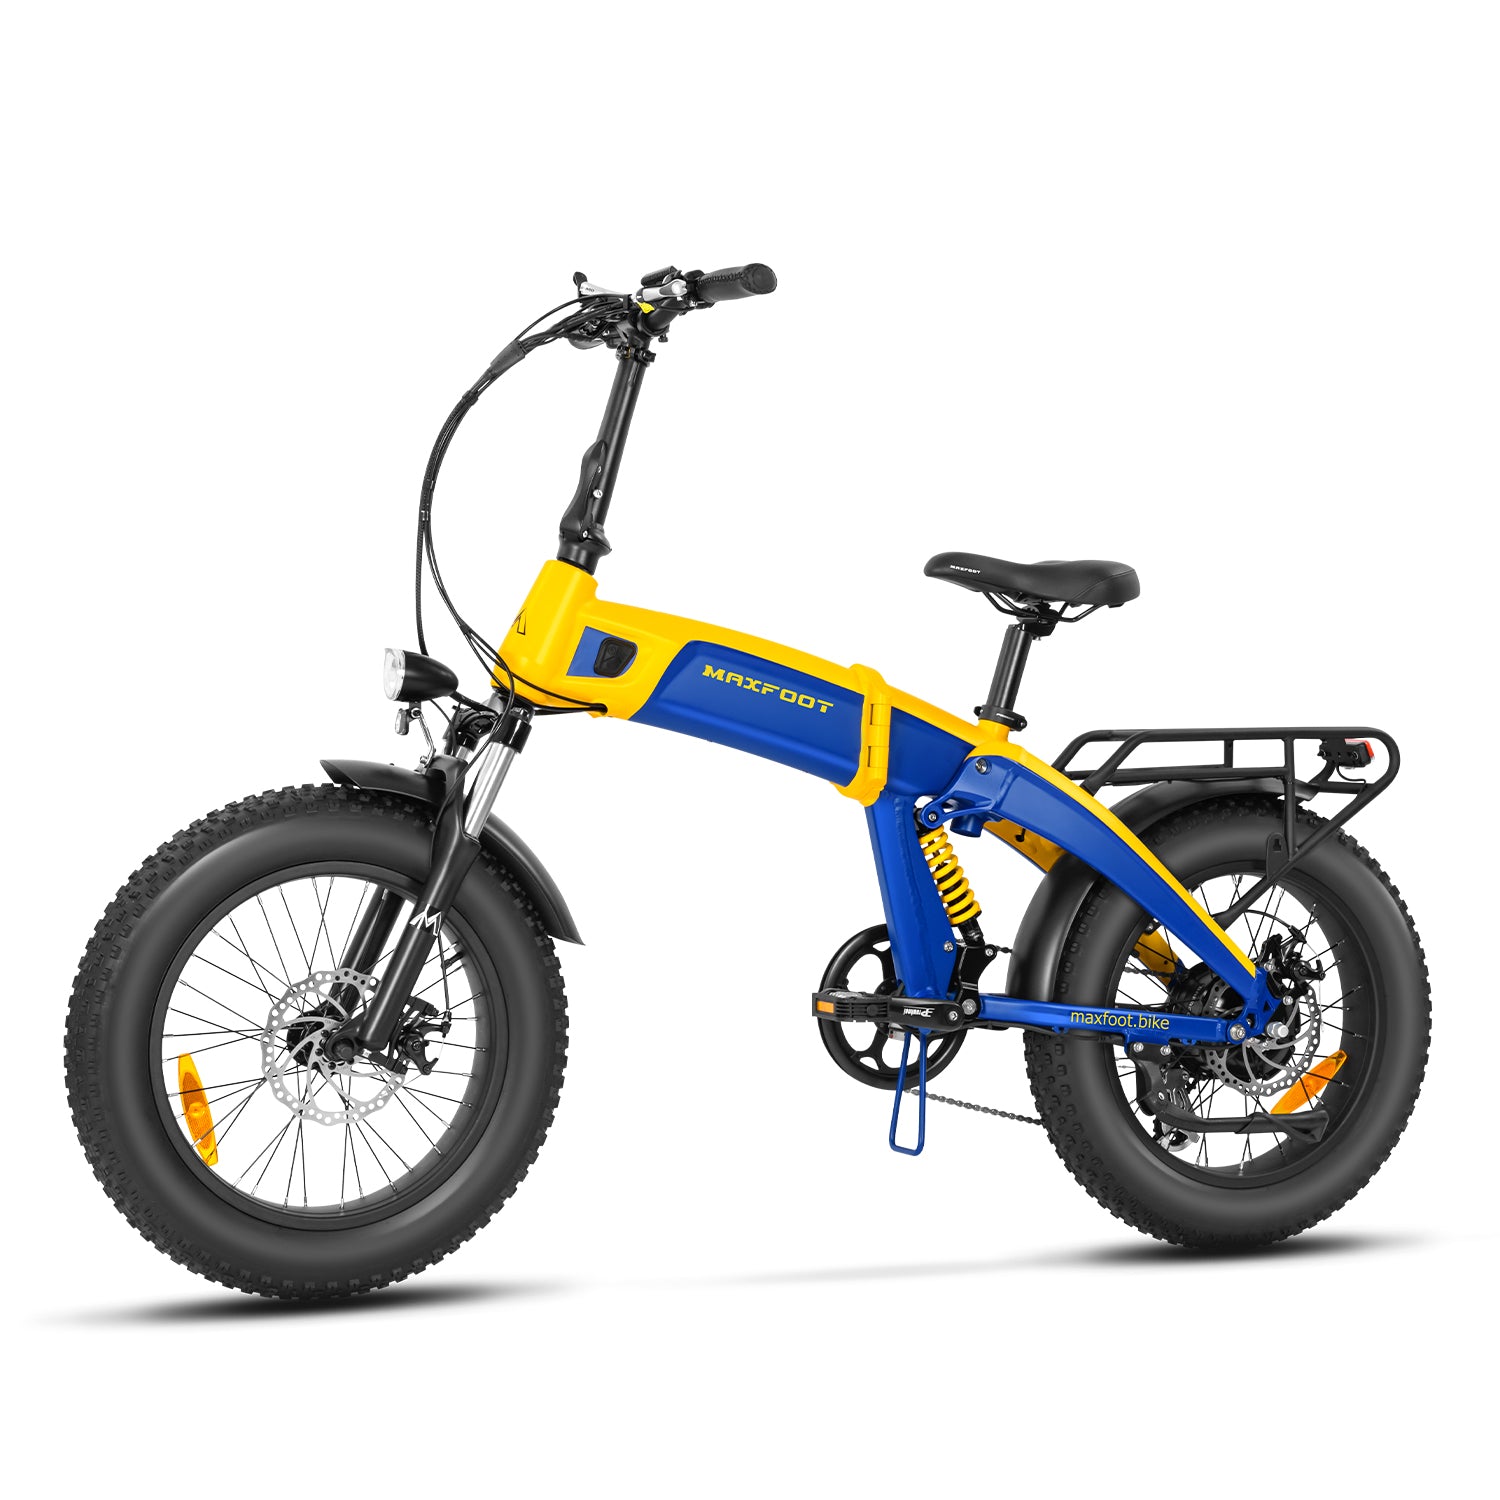  Maxfoot - Triciclo eléctrico para adultos, triciclo eléctrico  de 3 ruedas, 50-65+ millas, batería extraíble de 750 W 17.5 Ah, MF307  Ebikes de 350 libras de transporte con bolsa trasera impermeable (